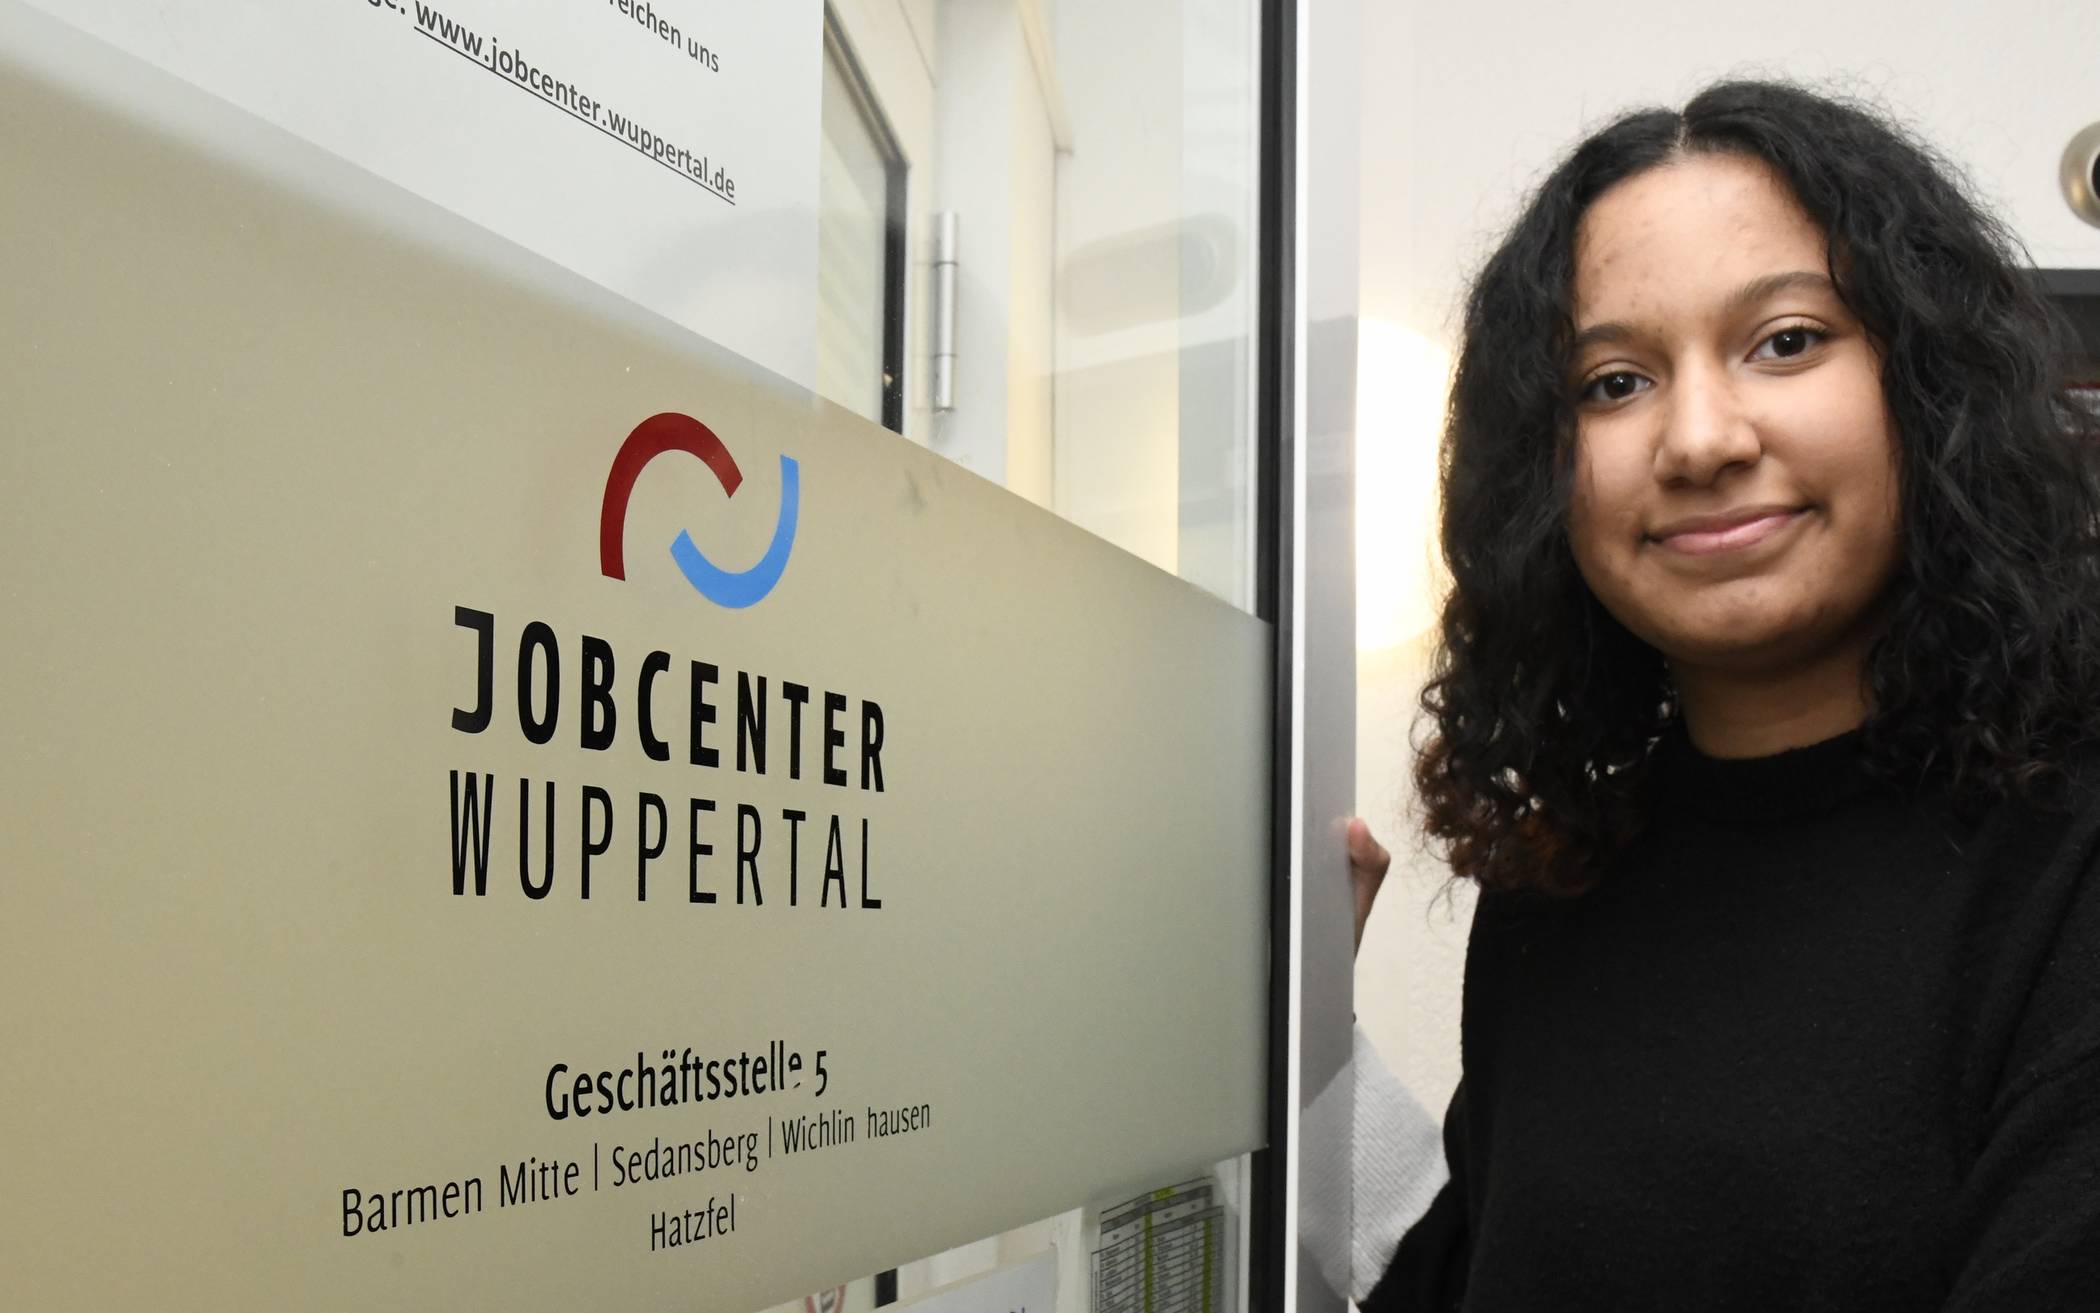  Samantha Josephine Amankwaah (21) hat sich übder die Webseite des Jobcenters erfolgreich beworben.  